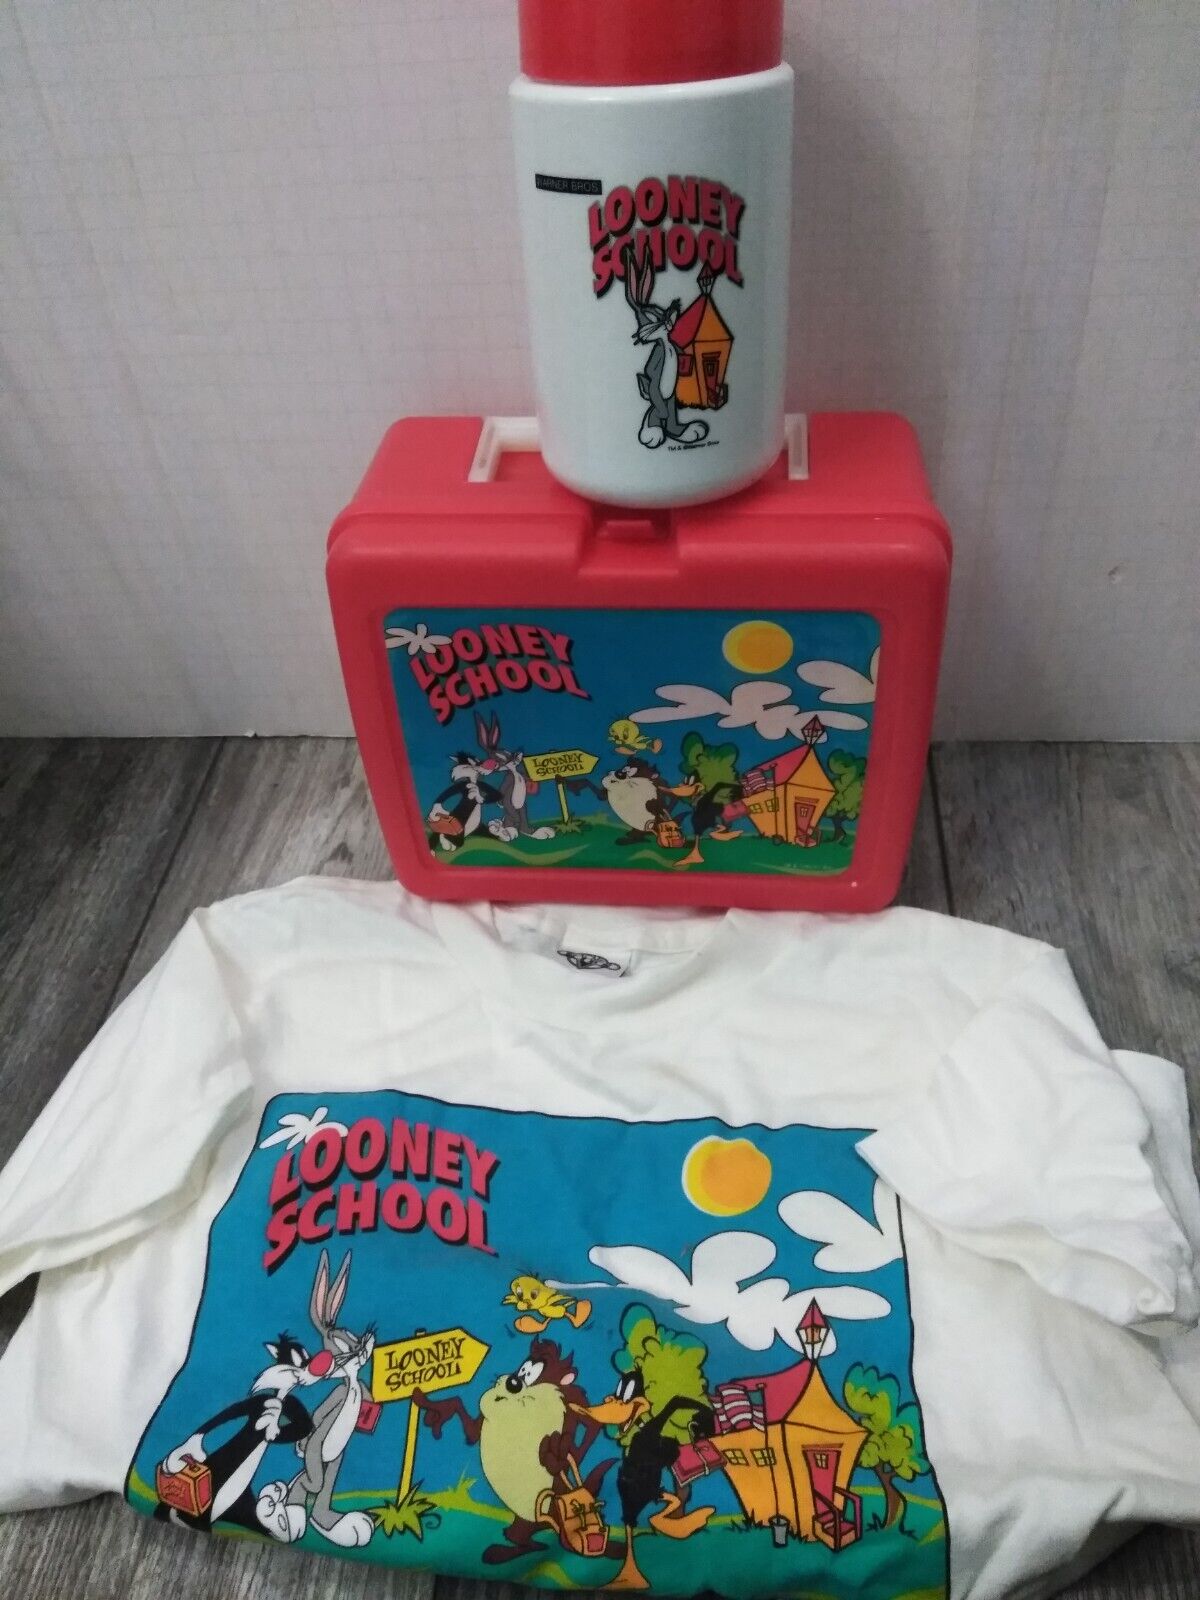 N.O.S. WARNER BROS. 1990'S Looney Tunes, Looney School RED Lunchbox W/ T-SHIRT Thermos - фотография #13